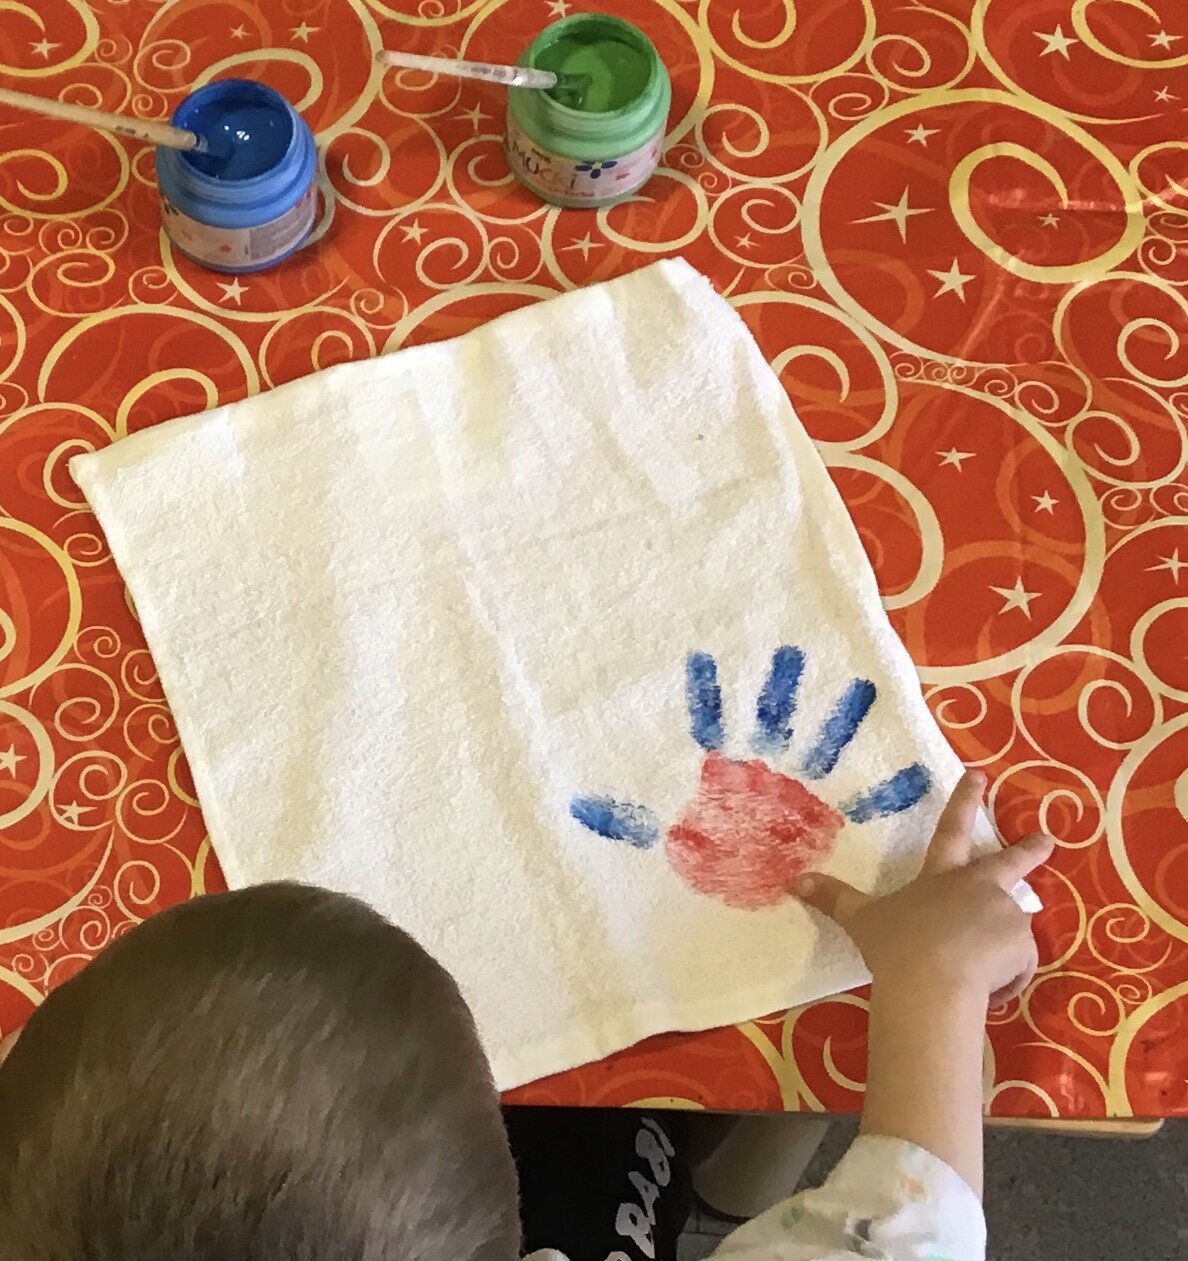 Von oben sieht man den Hinterkopf eines Kindes im linken Bildrand. Das Kind hat gerade einen blau - roten Handabdruck auf ein Stück weissen Stoff vor ihm aufgebracht.